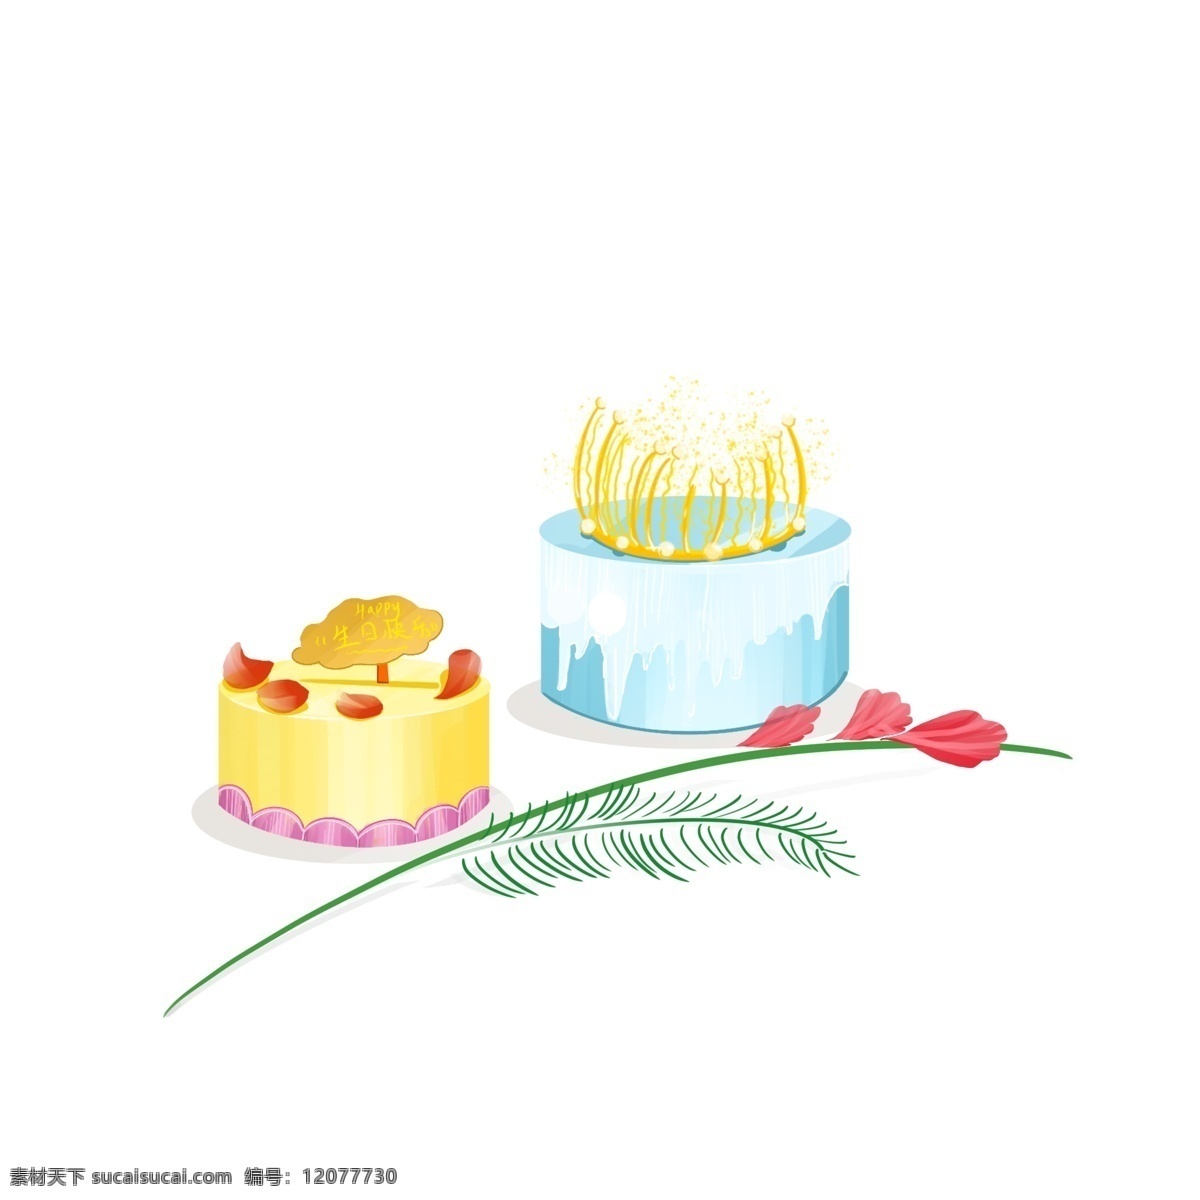 生日蛋糕 可爱 小 清新 生日 蛋糕 小清新 花 草 搭配 元素 蓝色蛋糕 黄色玫瑰蛋糕